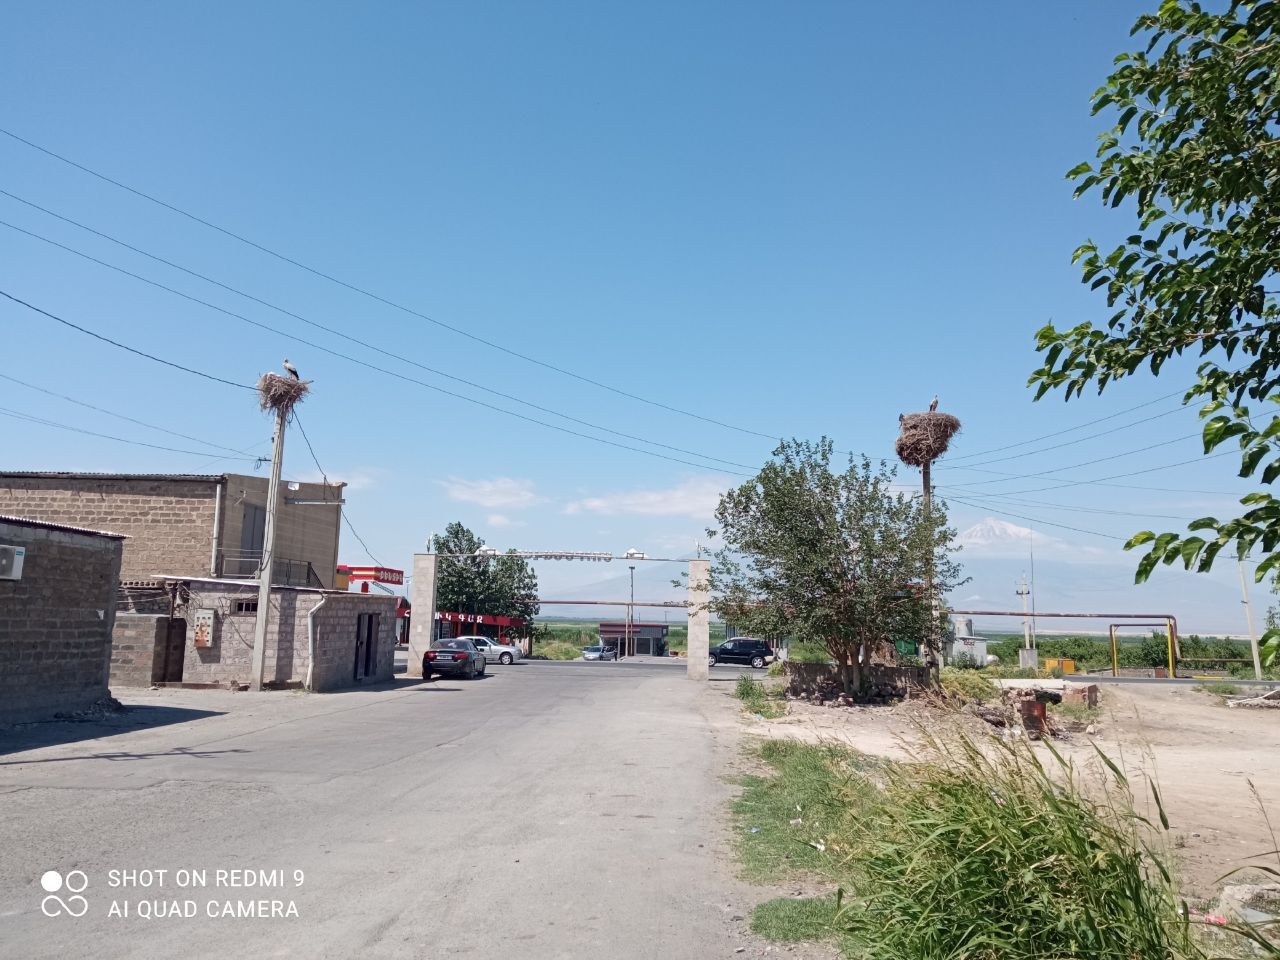 «Аист на крыше – мир на земле!» Суренаван, Армения